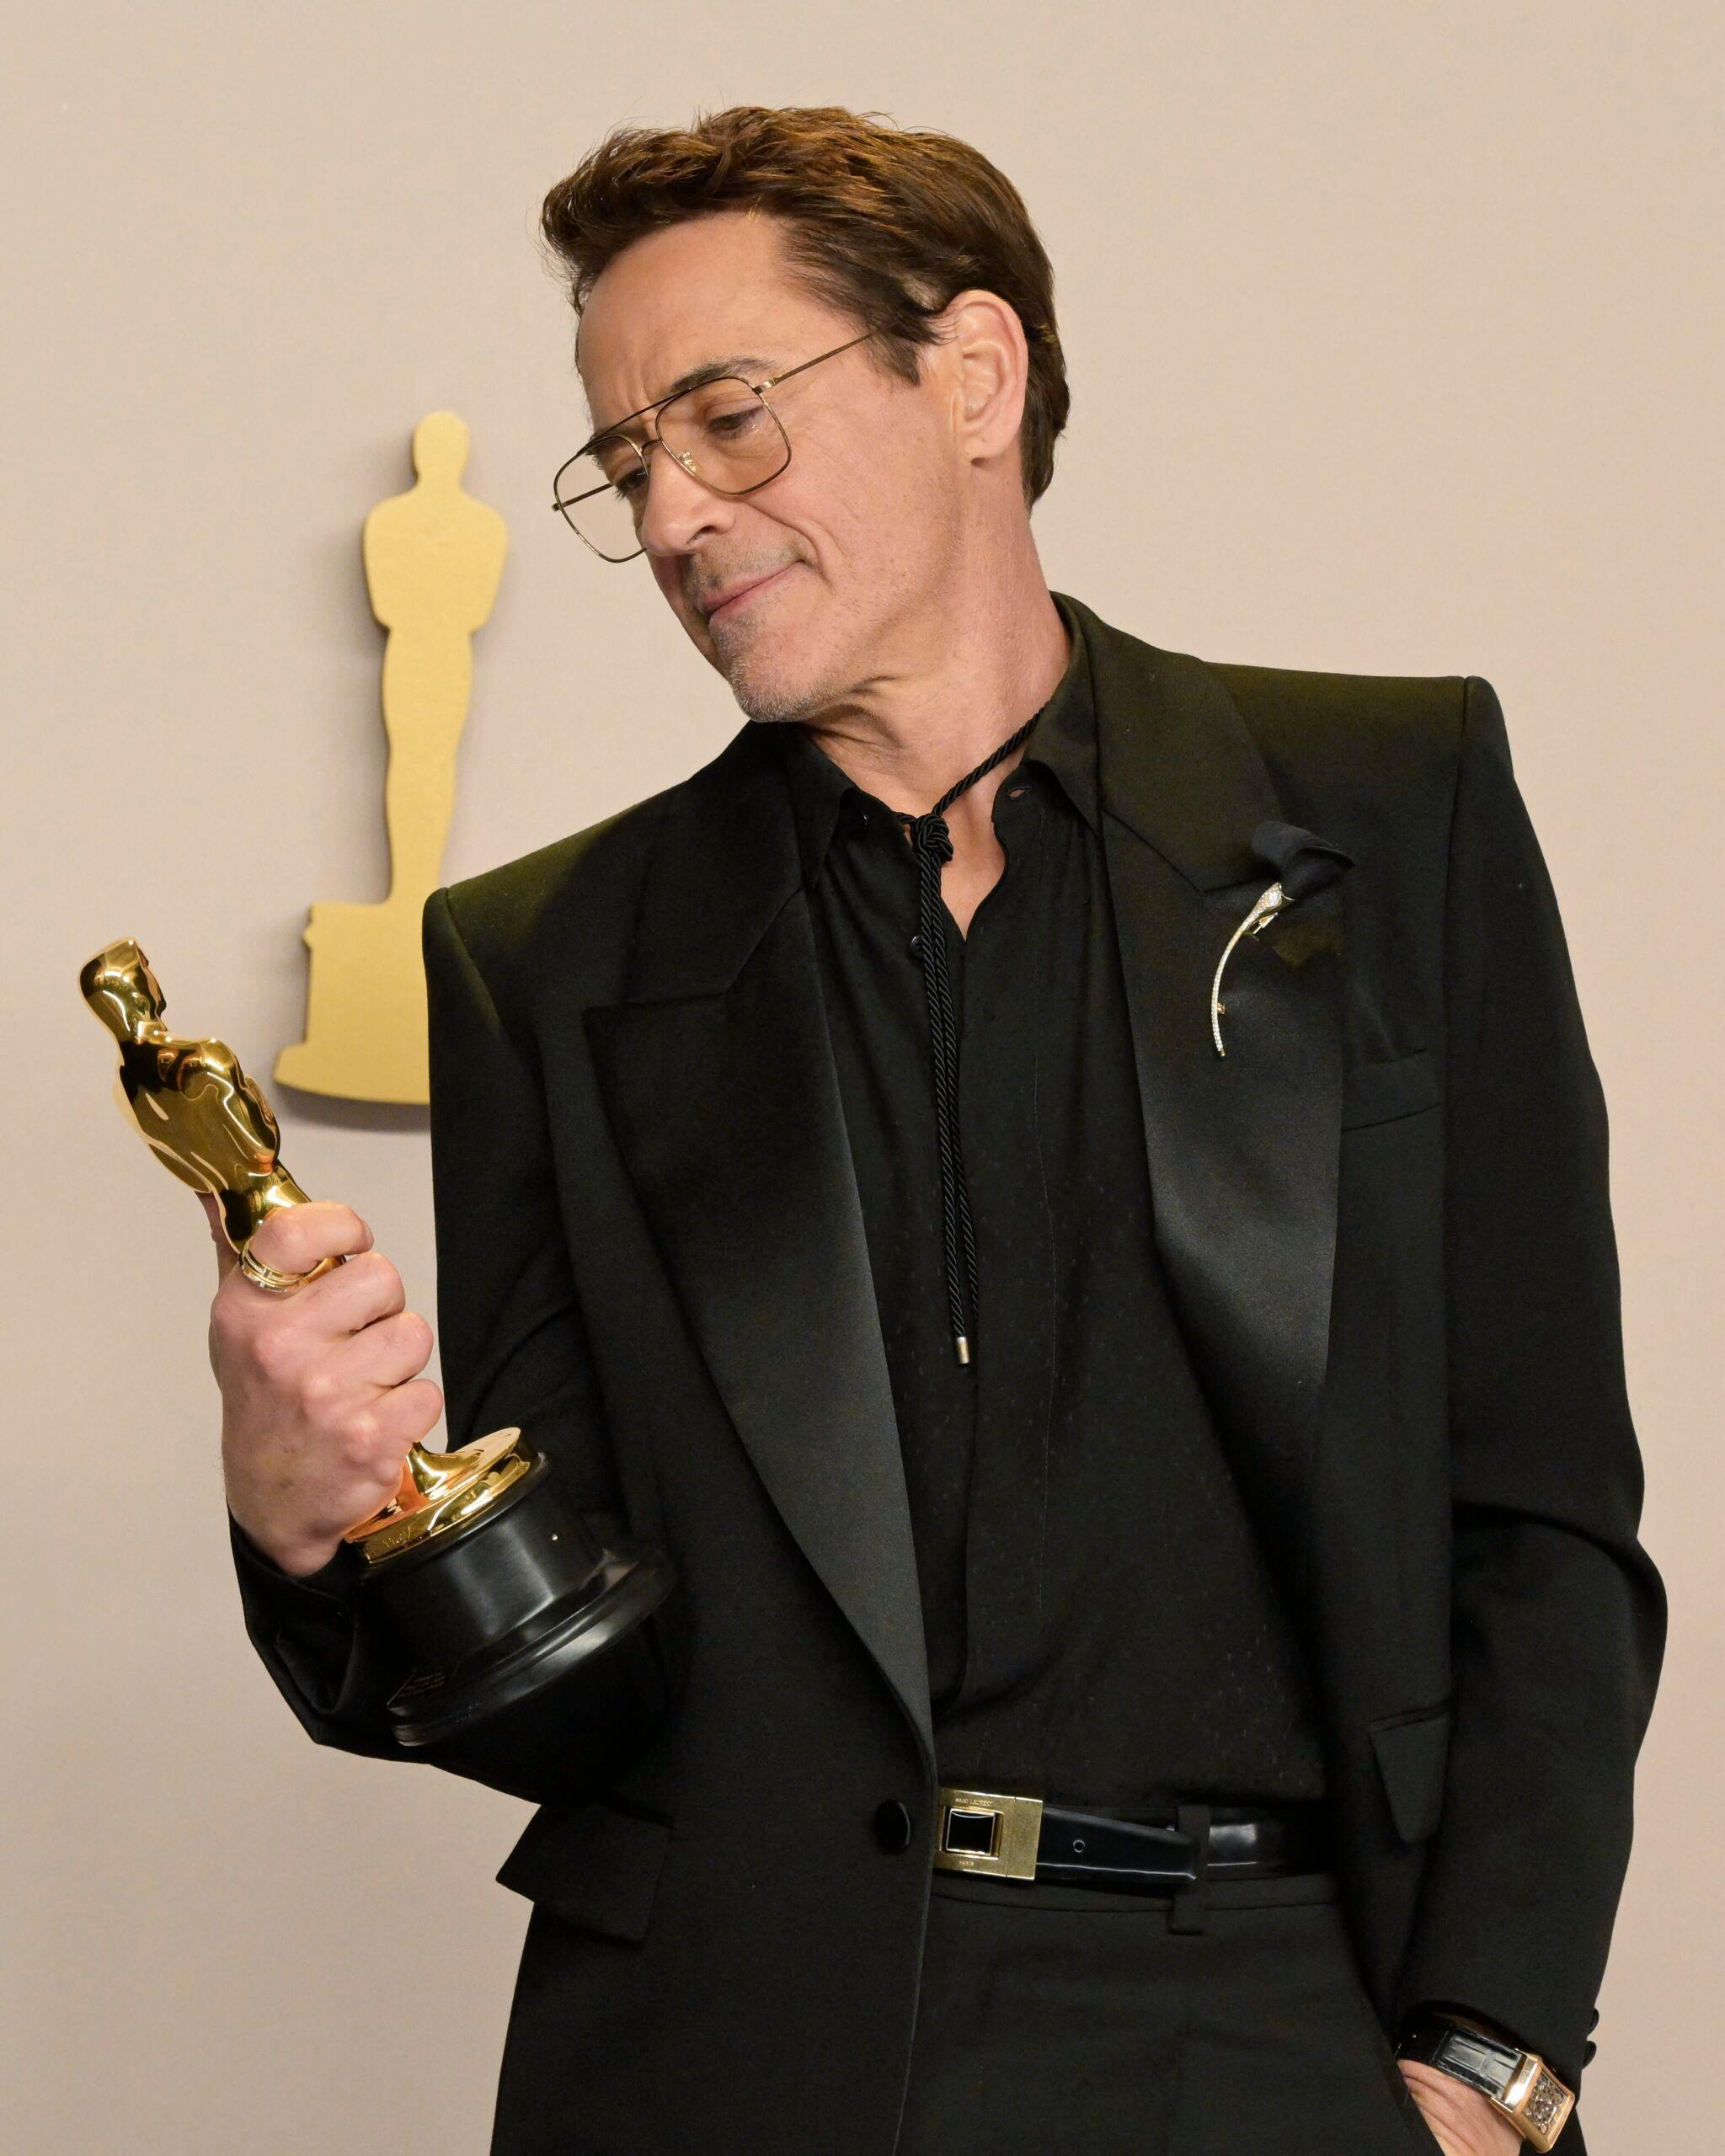 Robert Downey Jr. Reveals If He Would Return To Marvel After Winning An Oscar